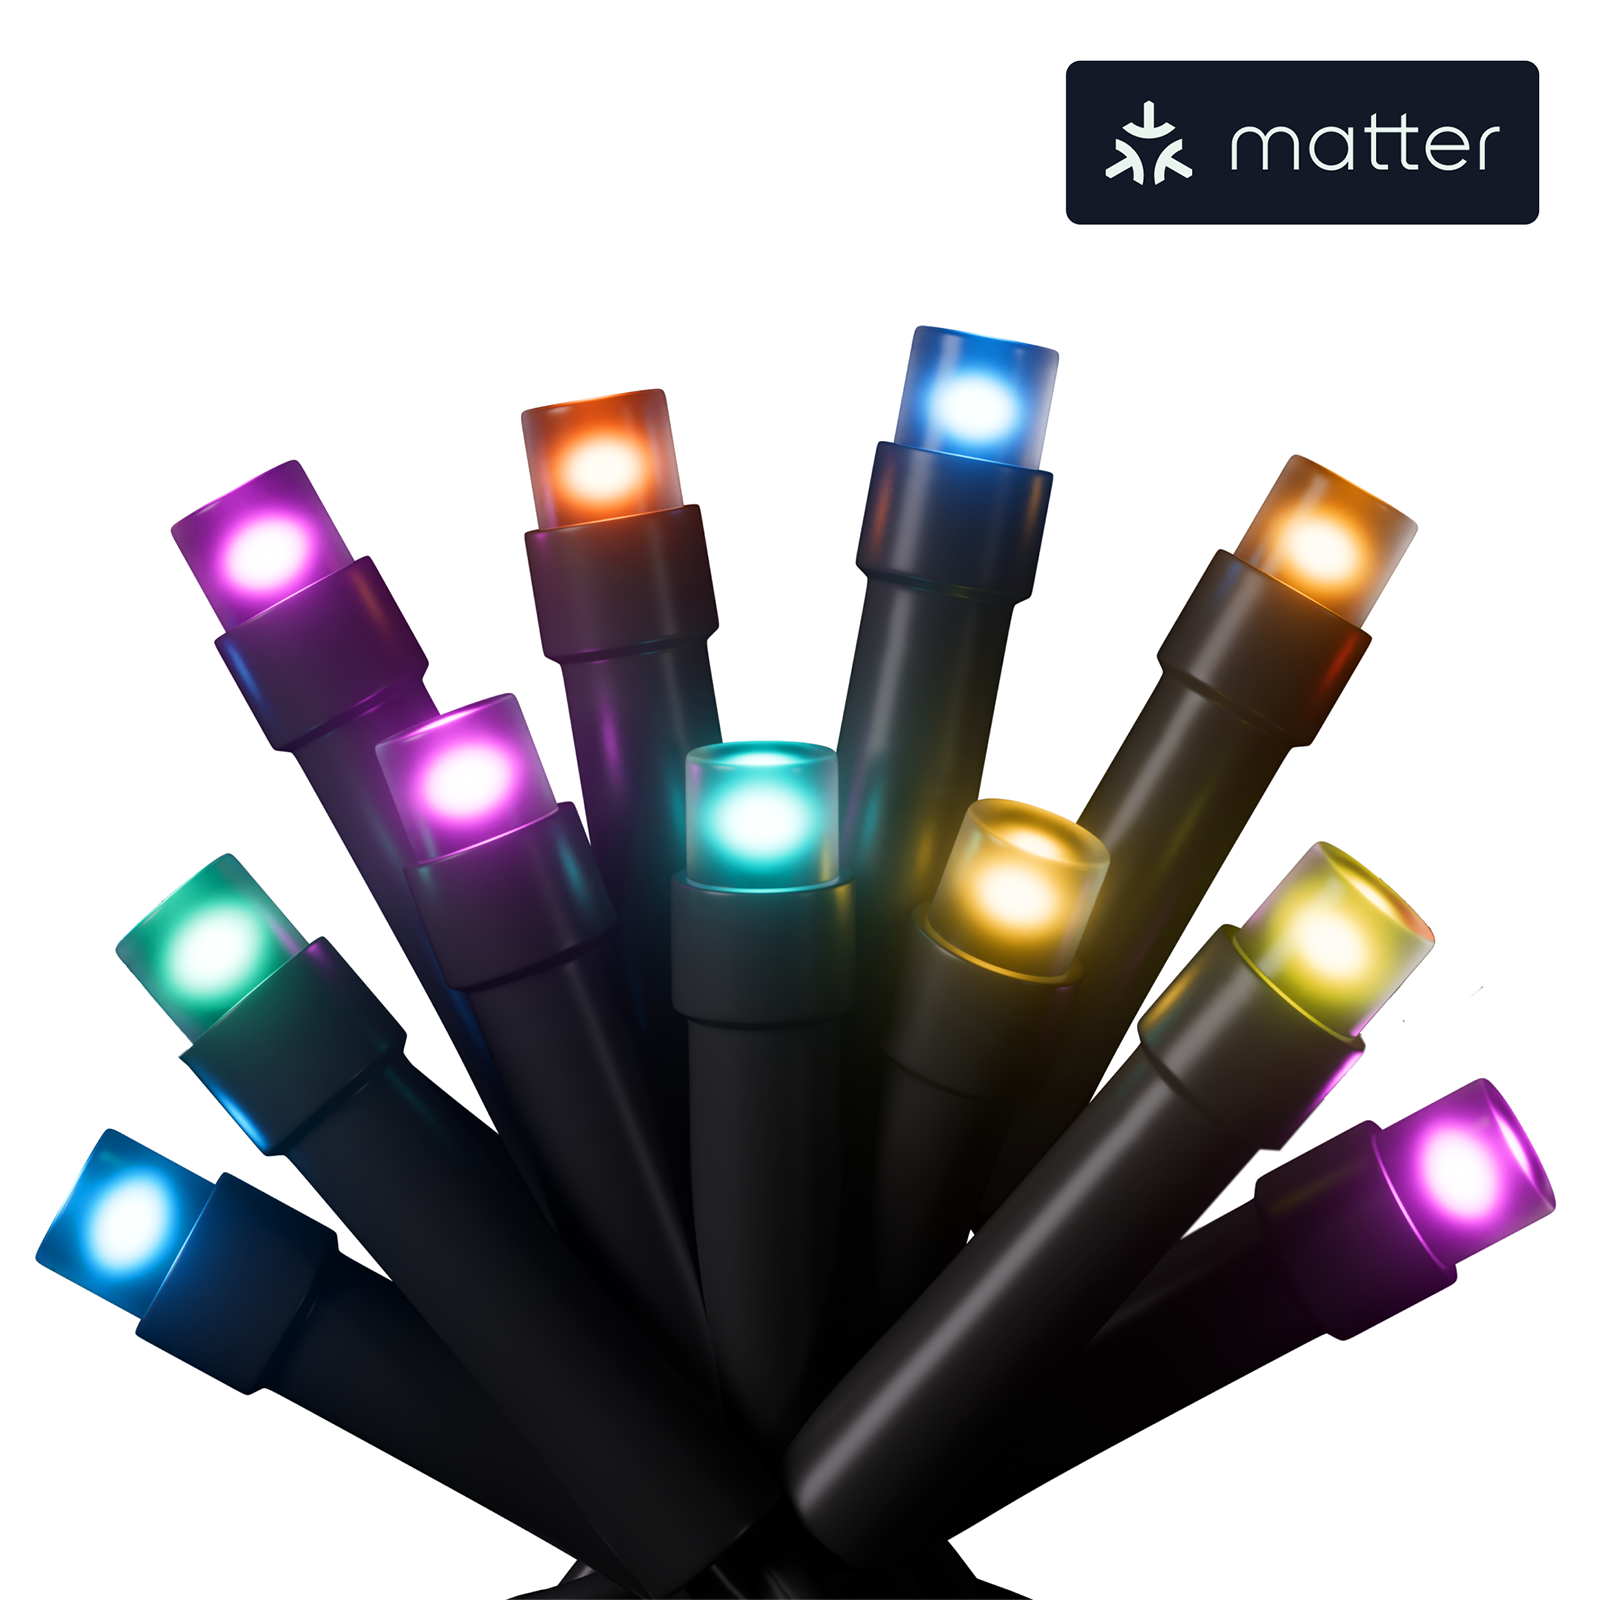 Nanoleaf Matter Smart Holiday String Lights